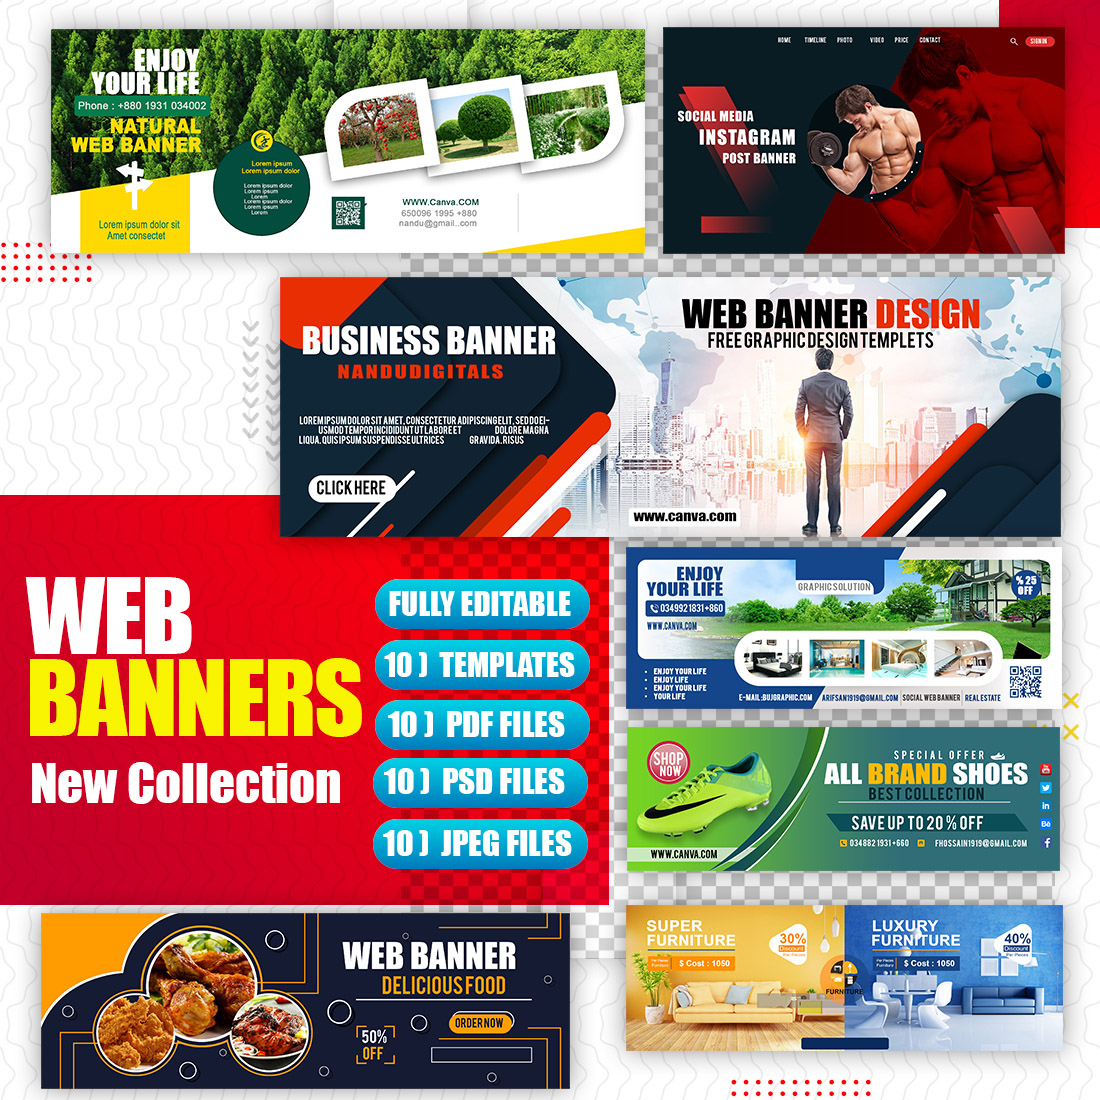 Multi Purpose Brand Web Banner cover image.